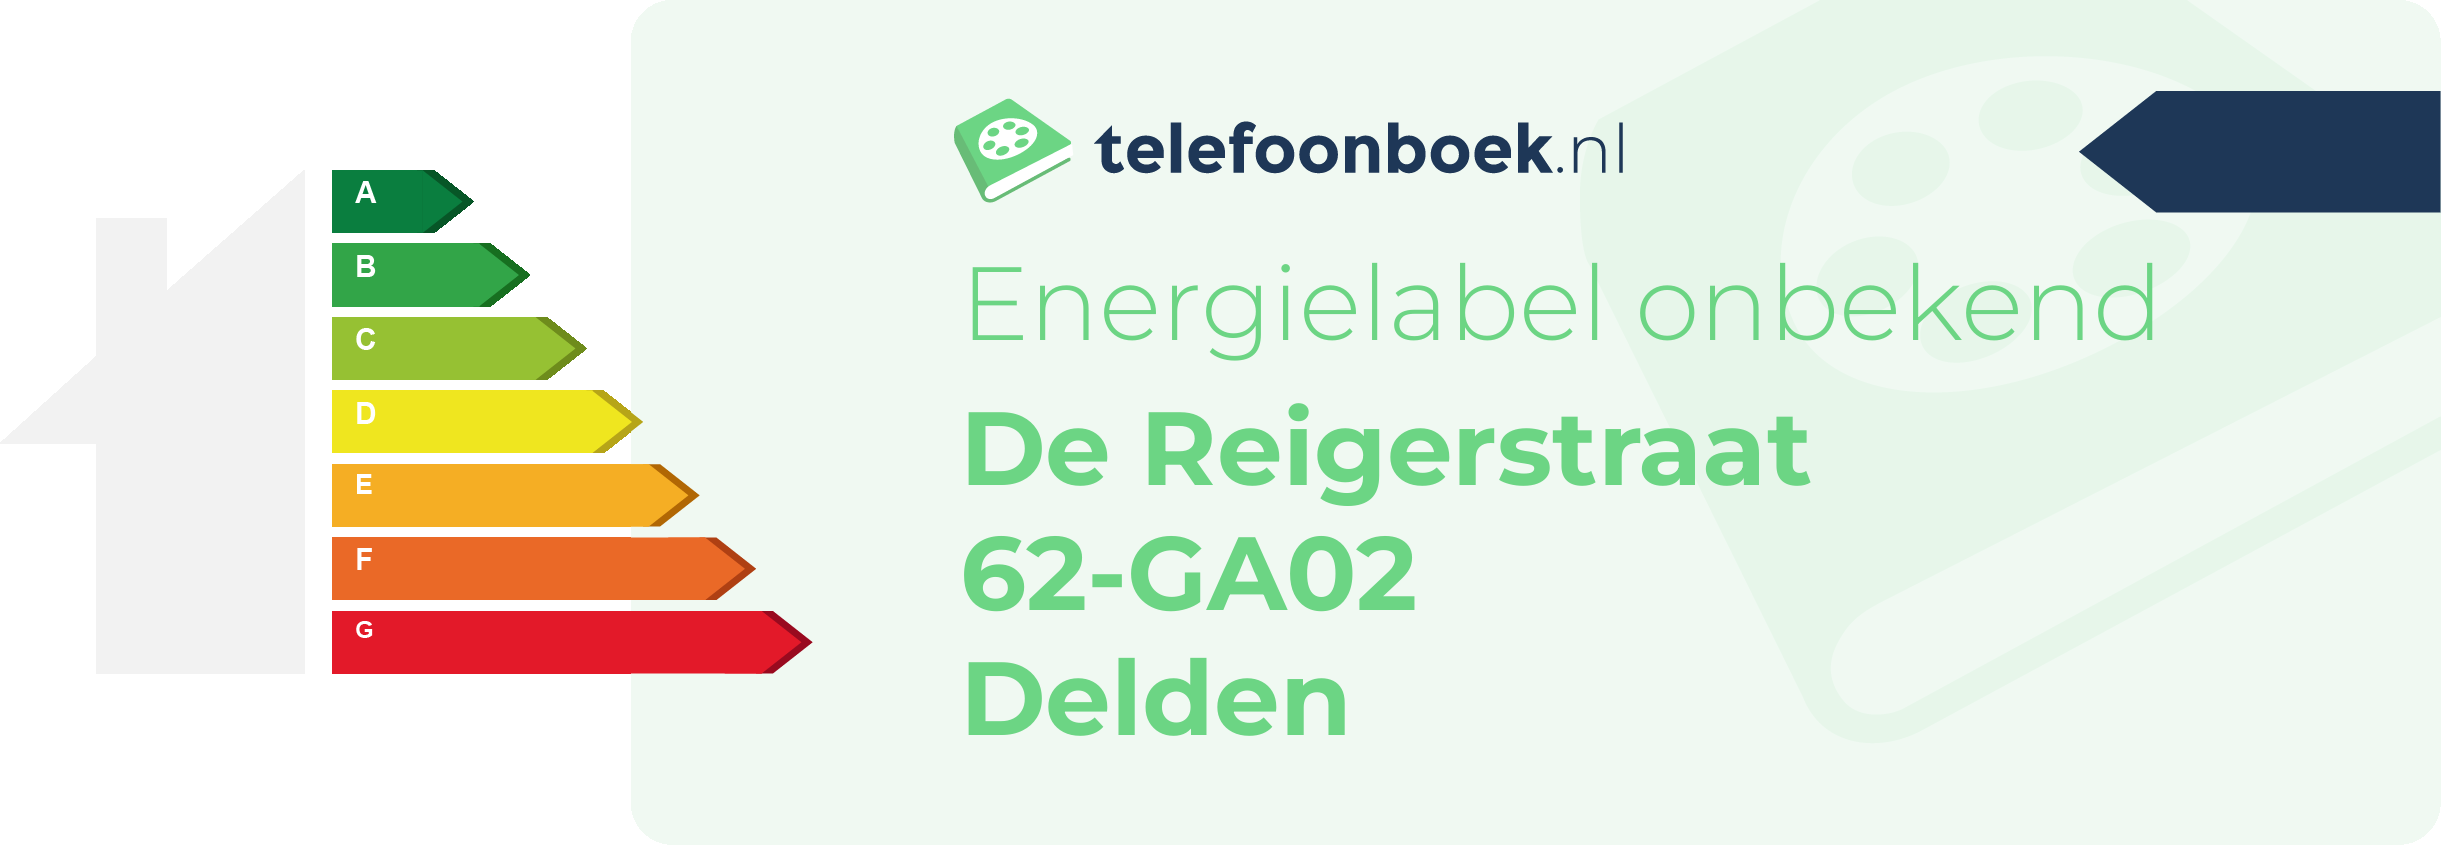 Energielabel De Reigerstraat 62-GA02 Delden